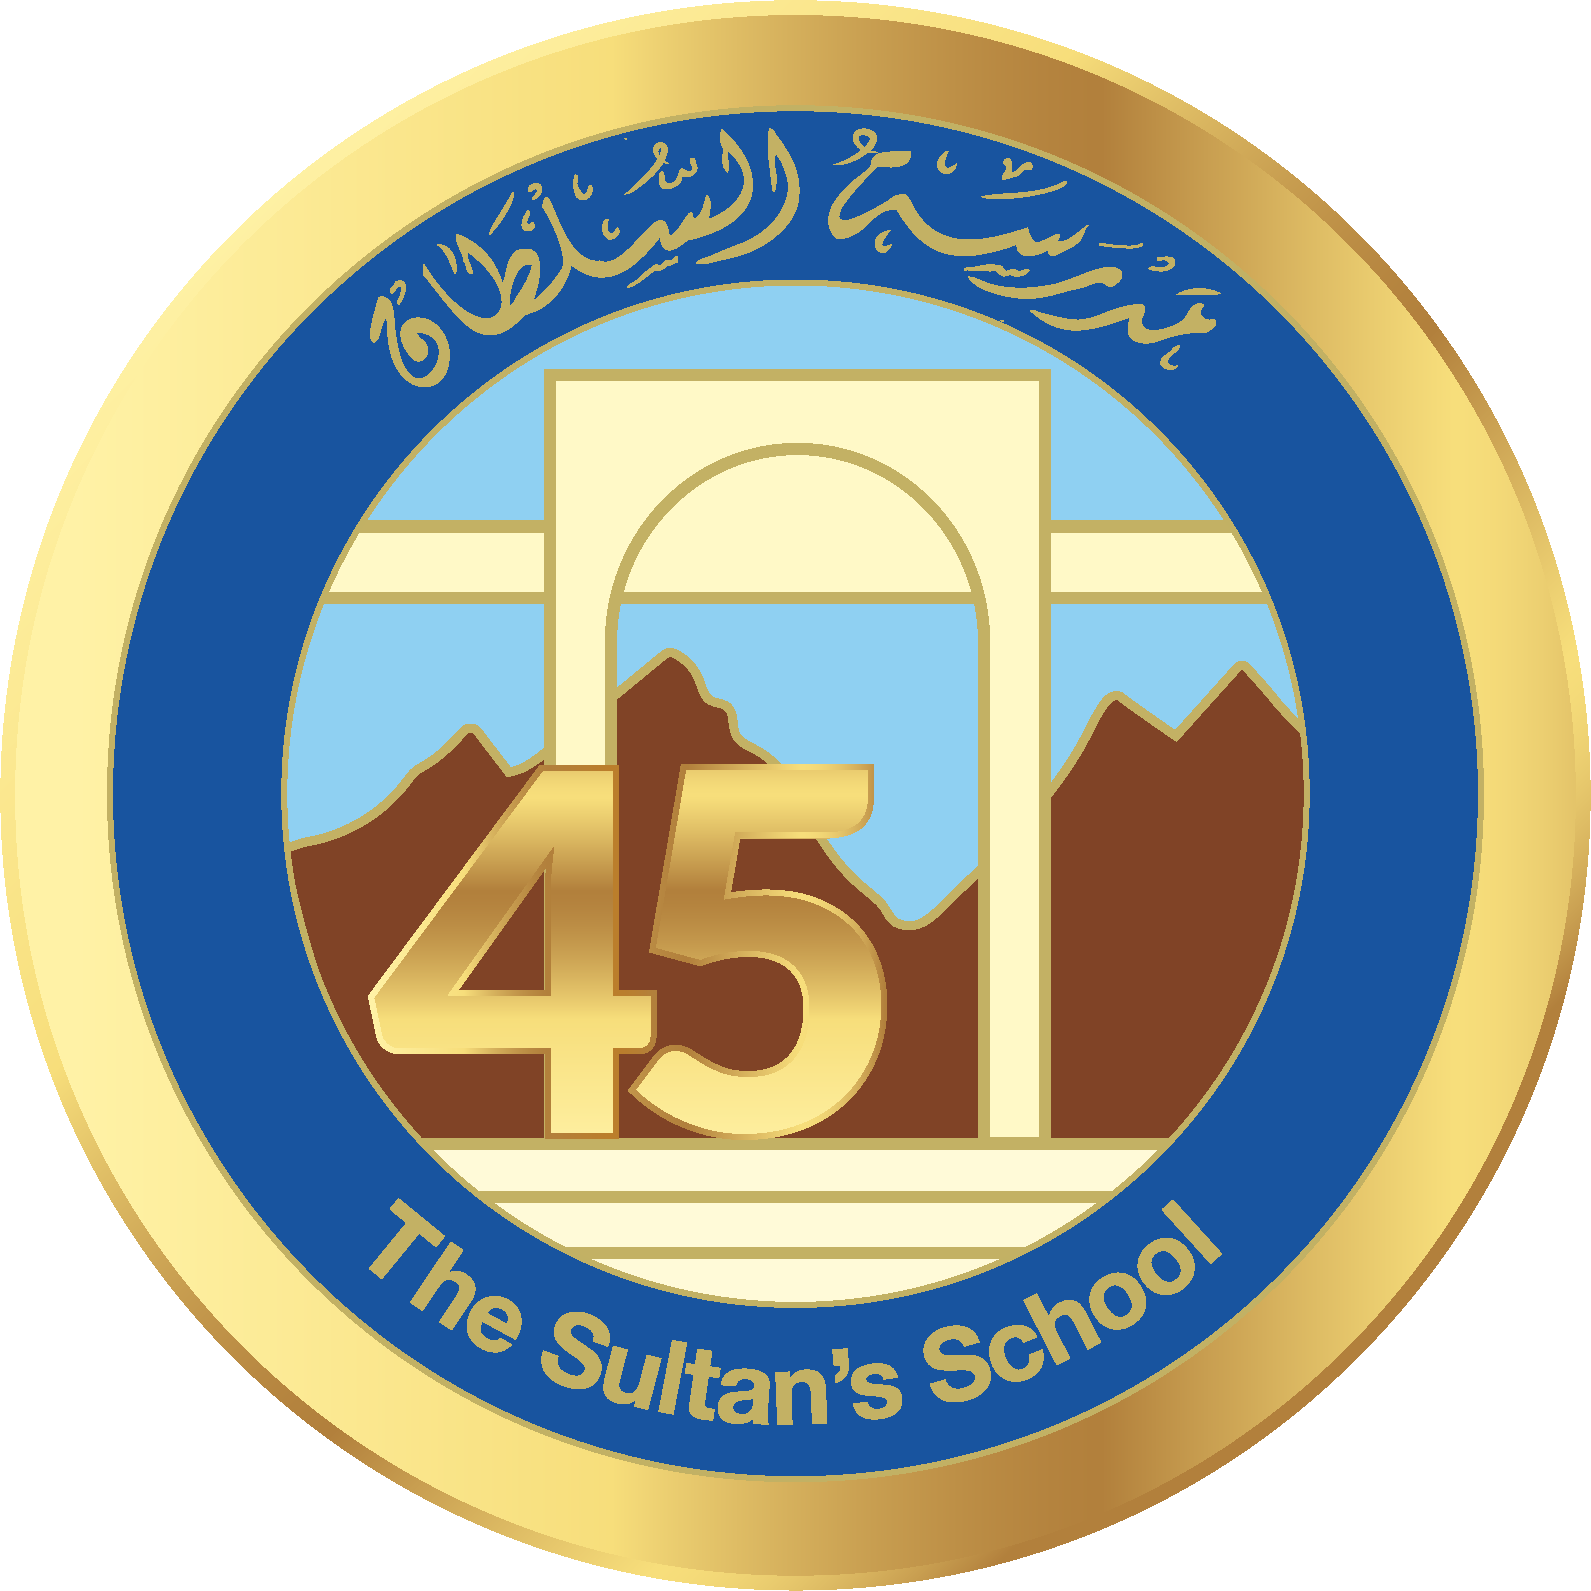 The Sultan's School